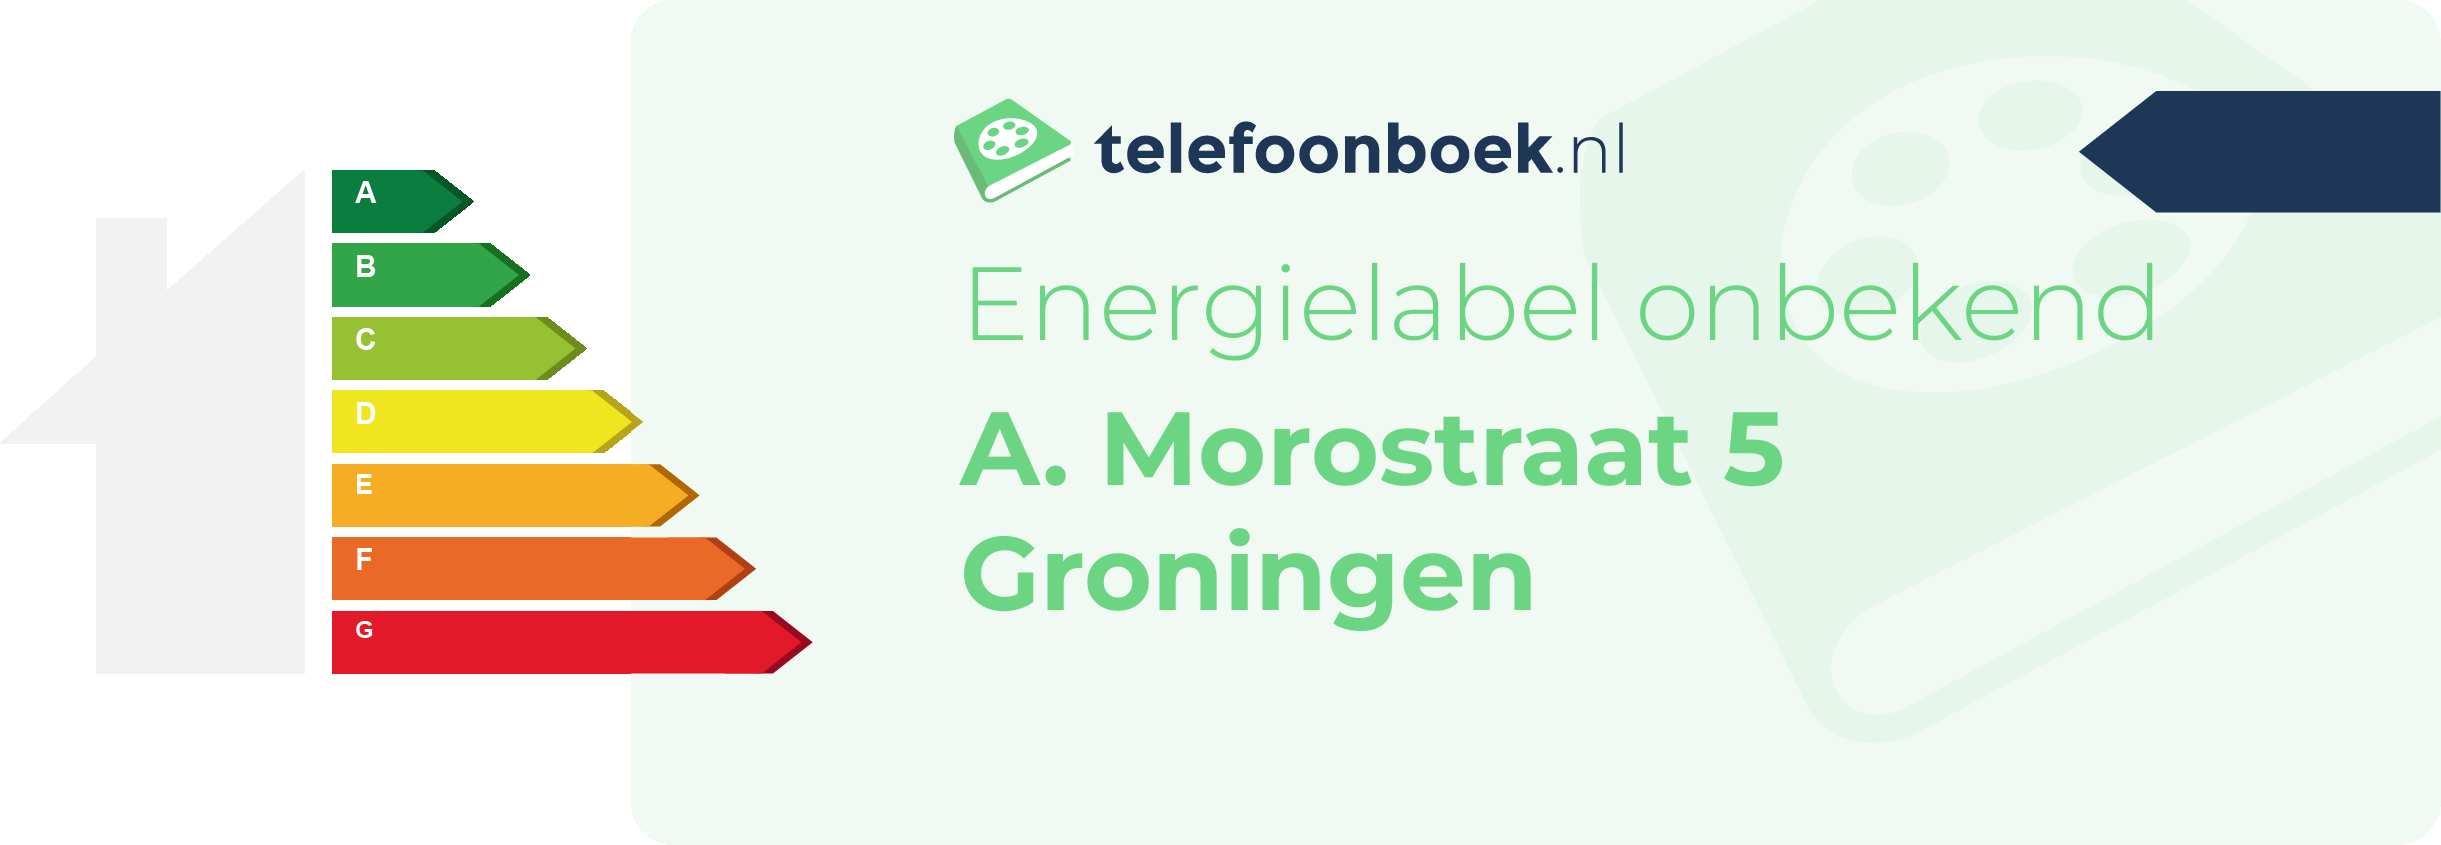 Energielabel A. Morostraat 5 Groningen